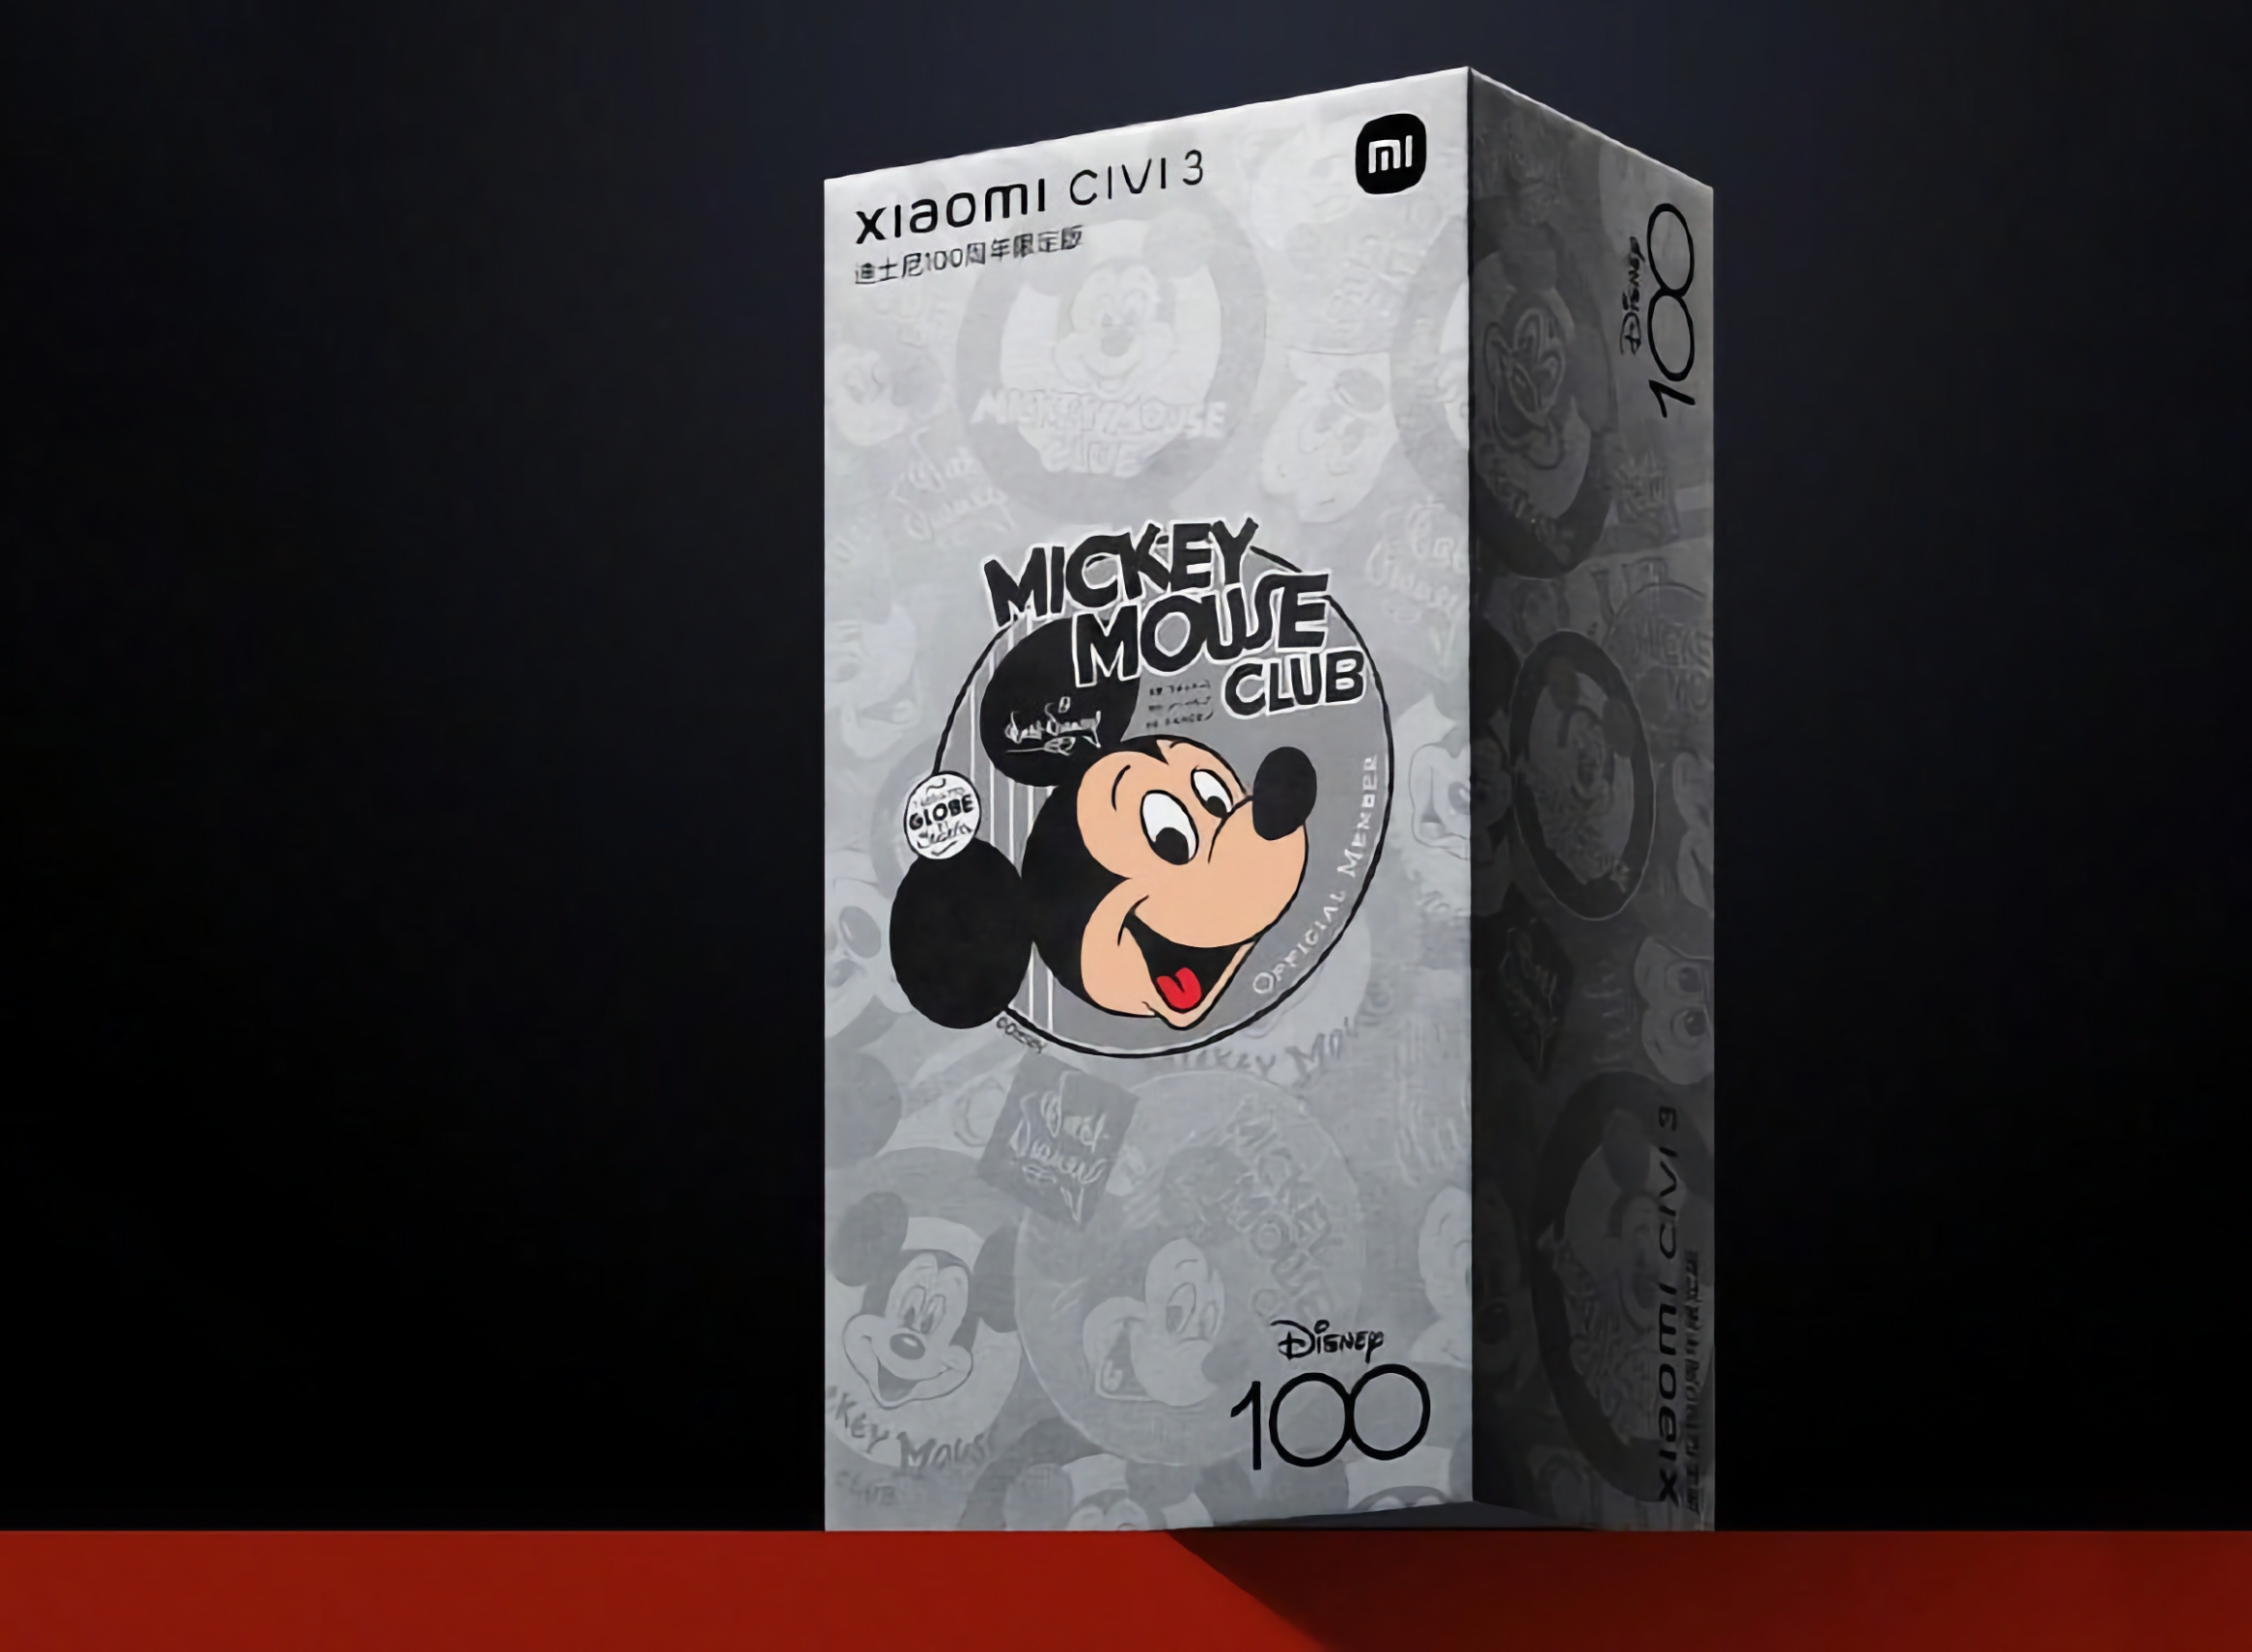 Xiaomi onthult in juni een speciale versie van de Civi 3 smartphone ter ere van de 100e verjaardag van de Walt Disney Company